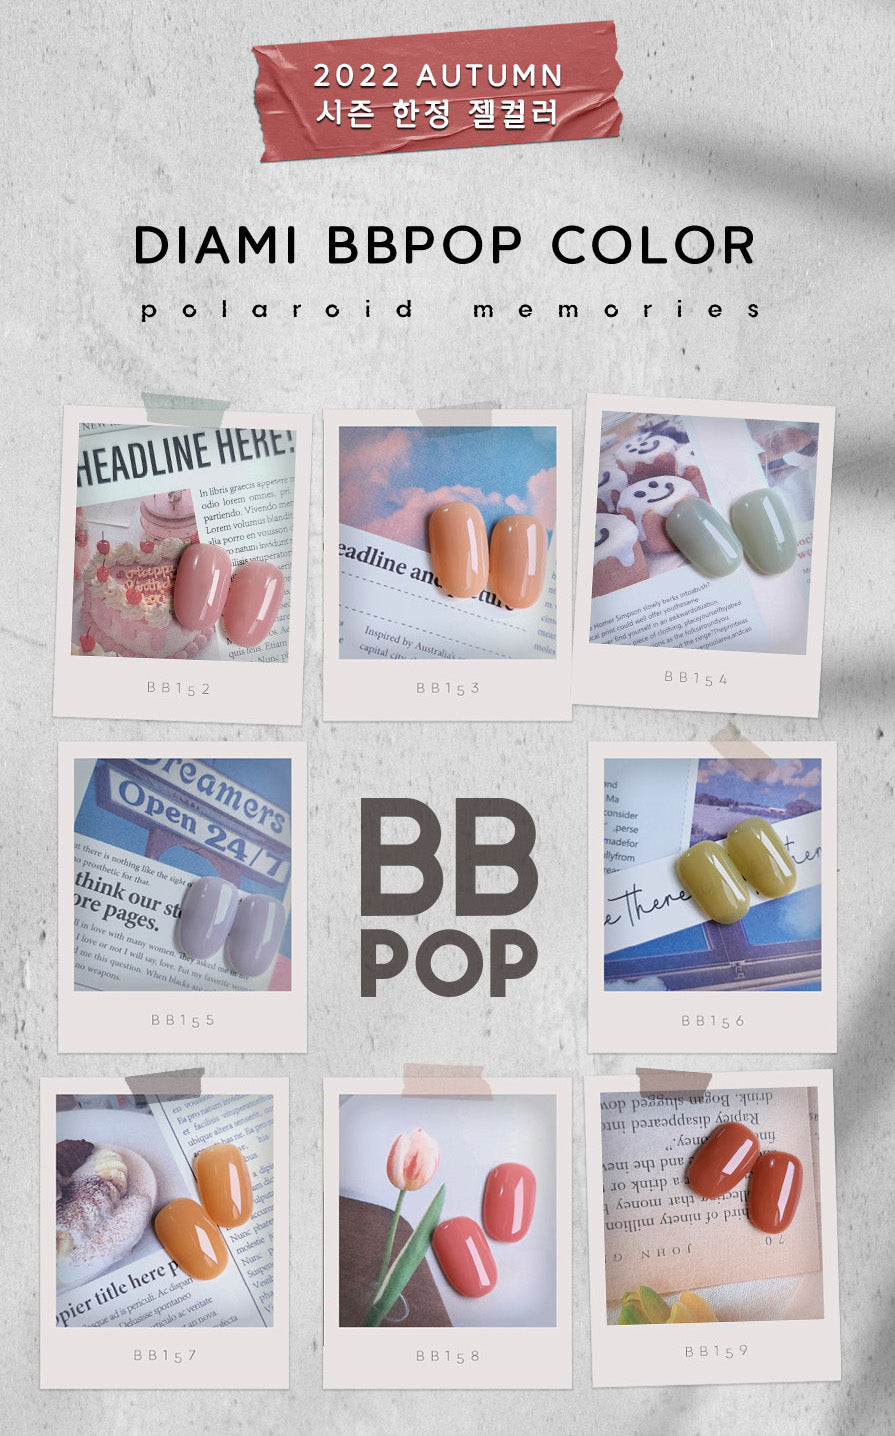 DIAMI BB Pop '22 Autumn Polaroid Memories Collection